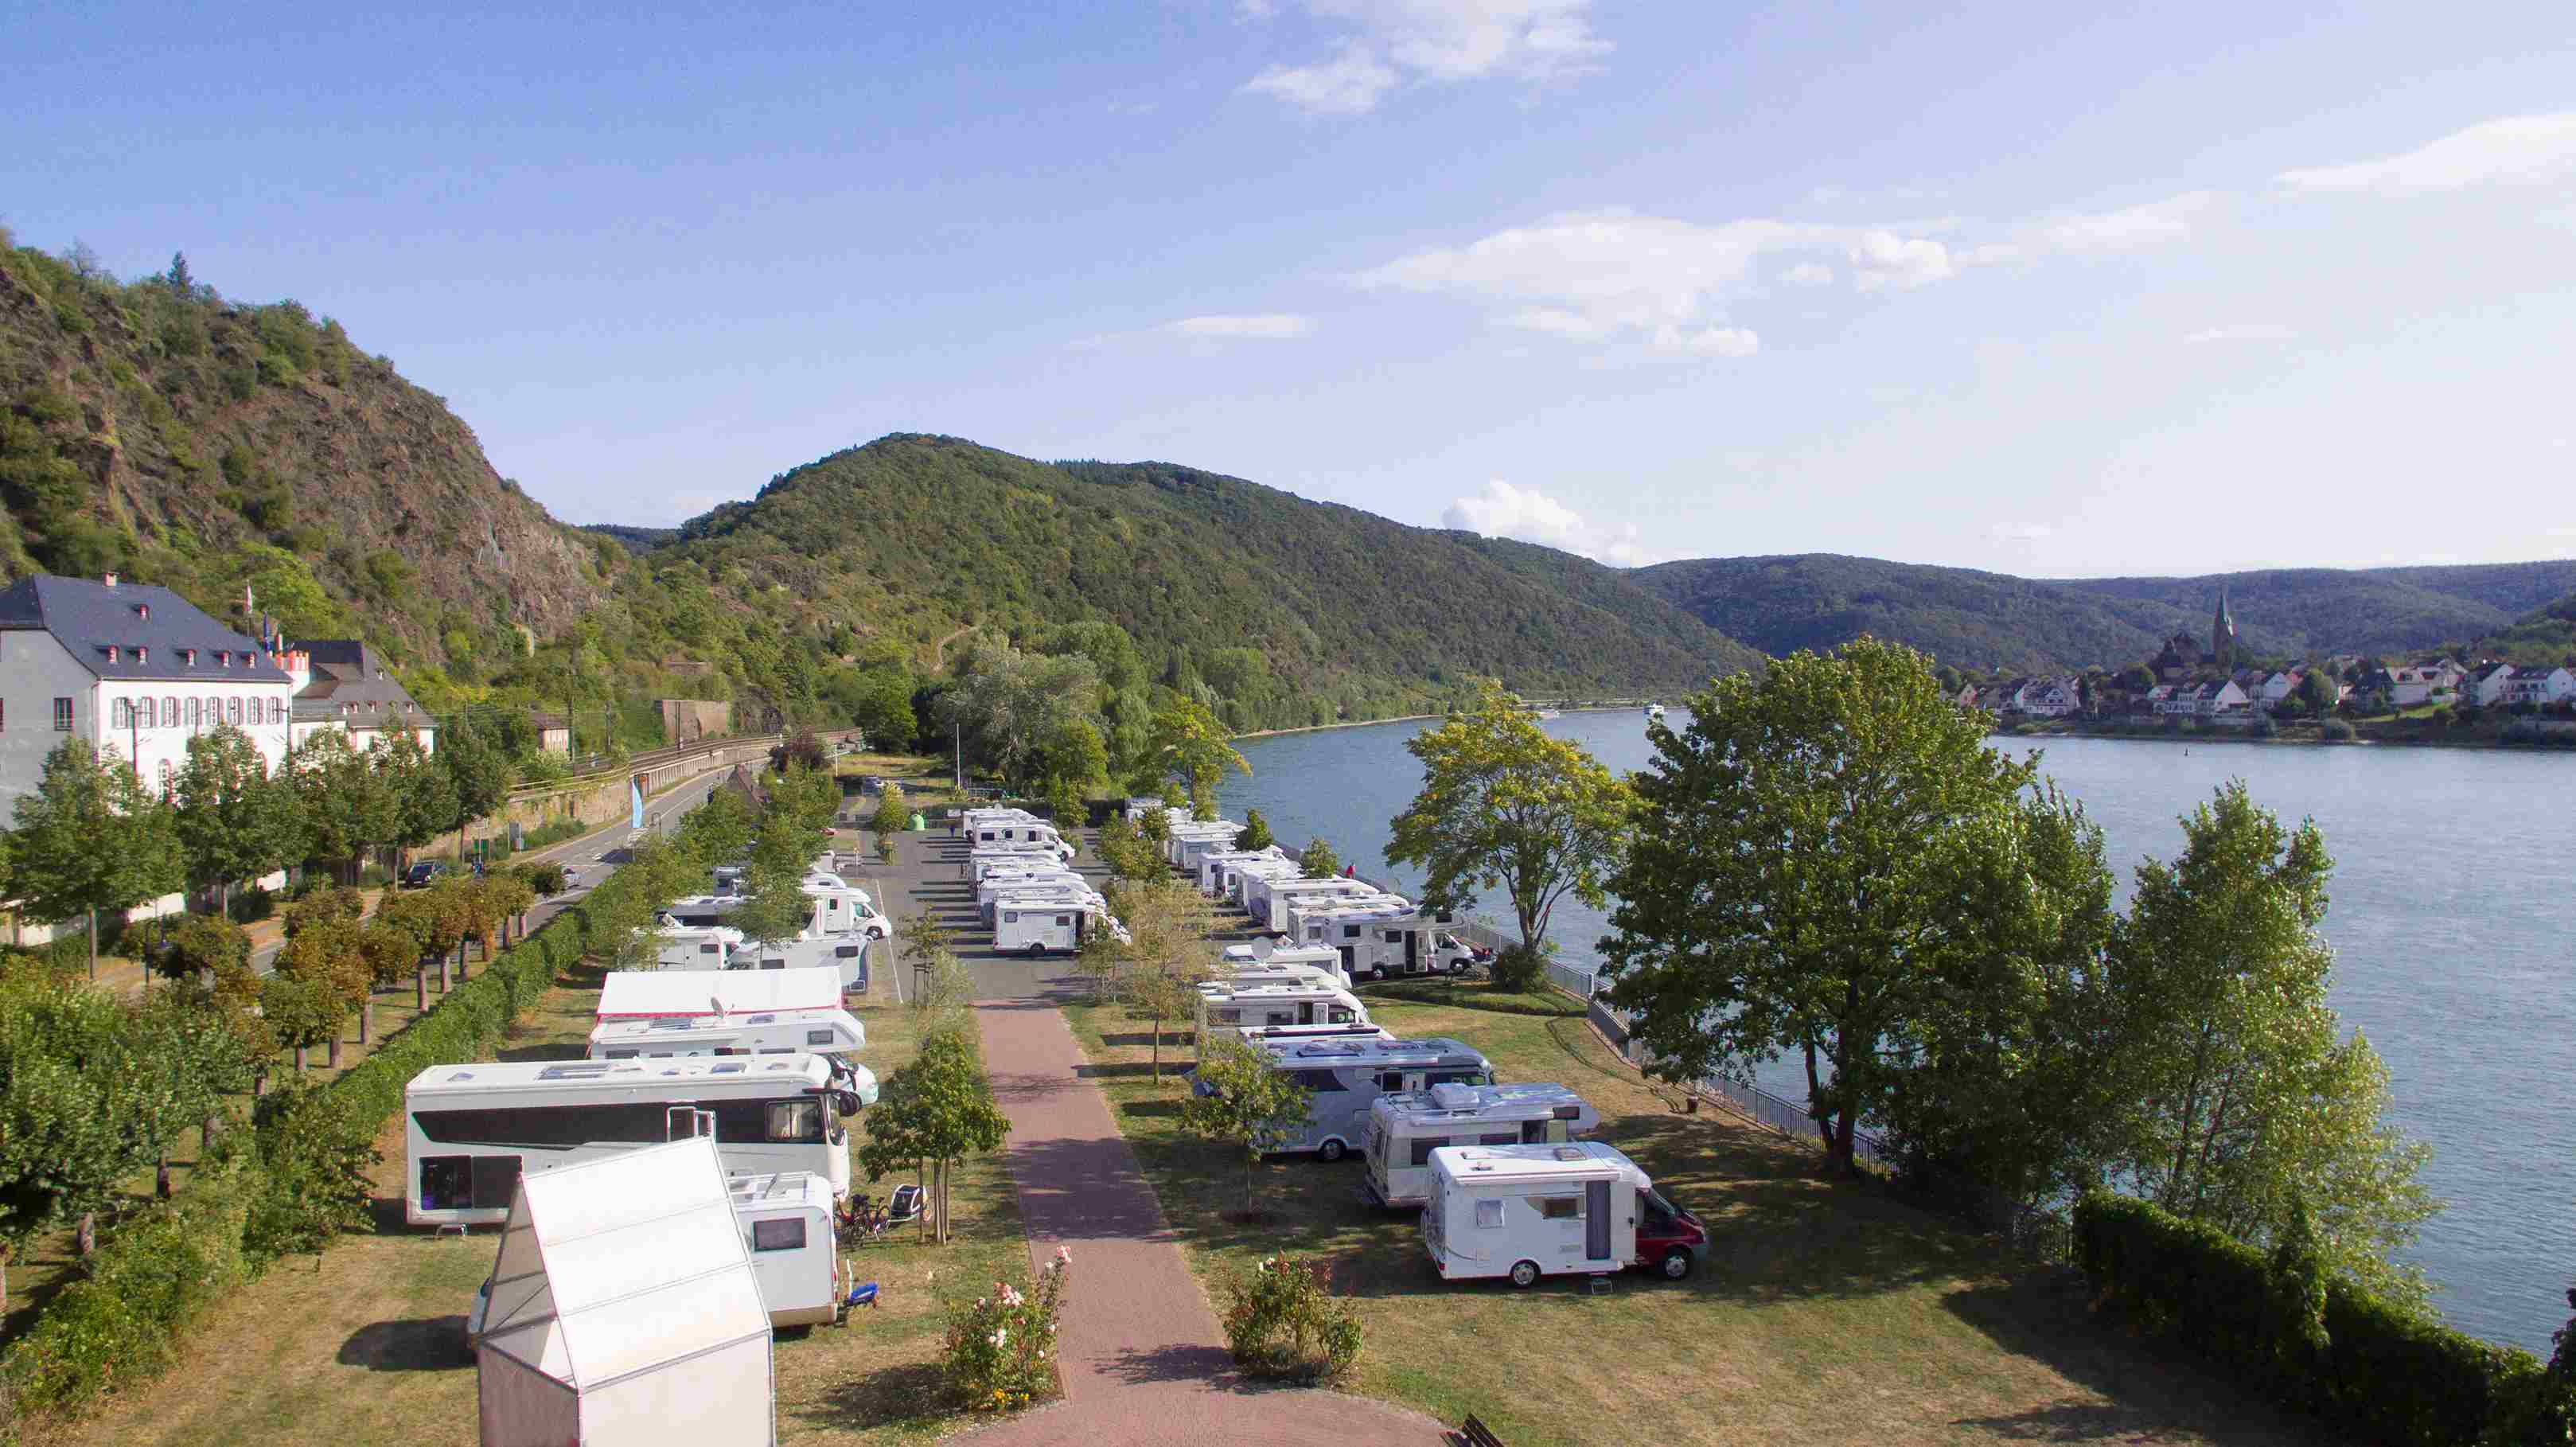 Luftfoto af campingplads med flere autocampere ved søen